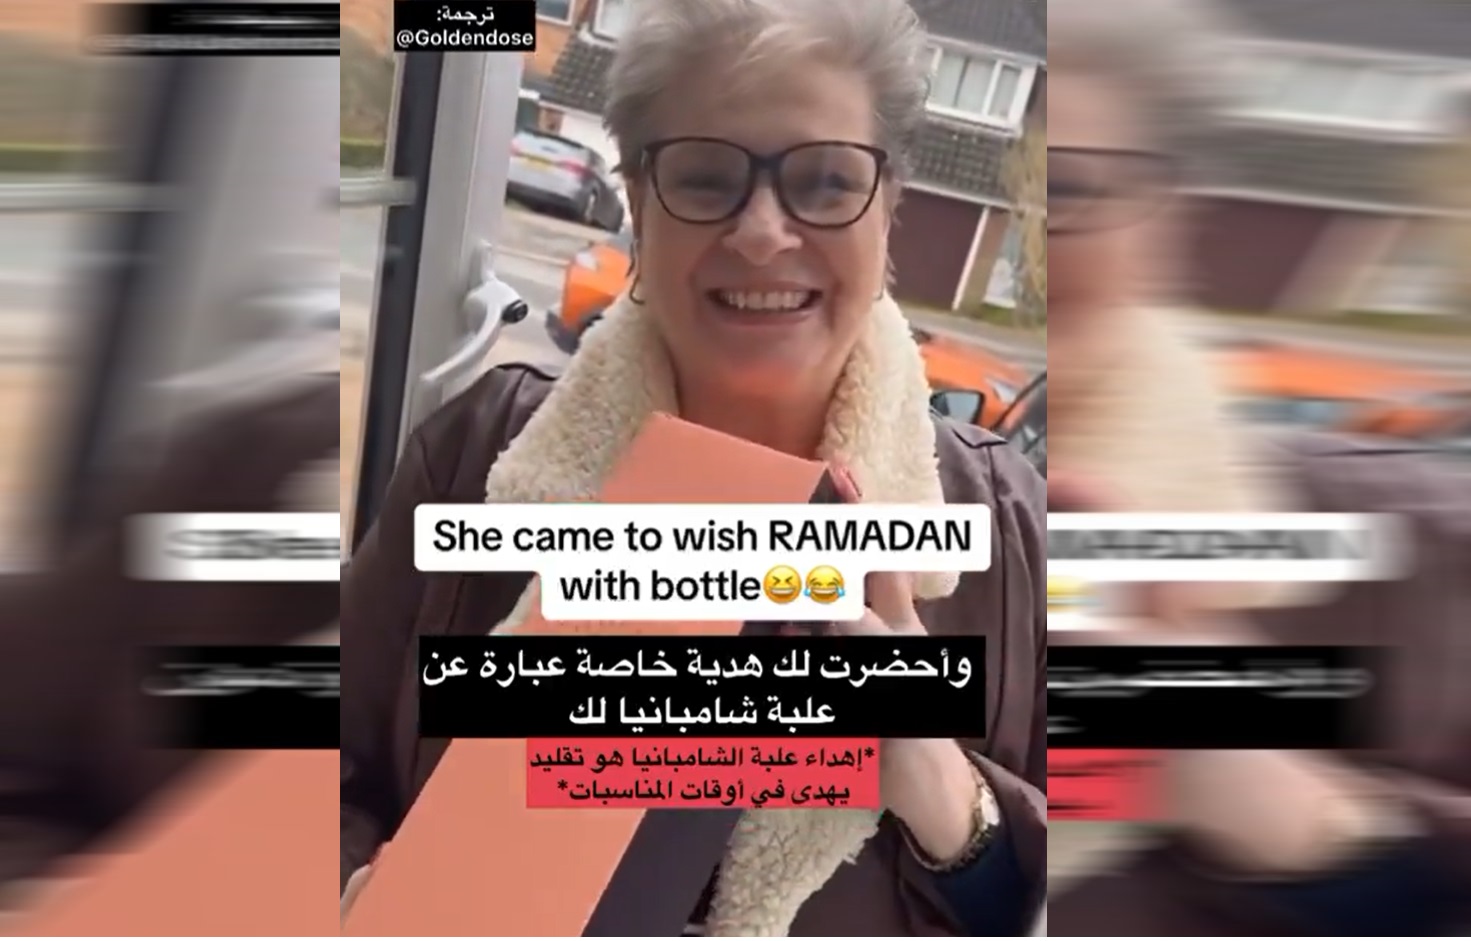 سيدة تهدي جارها زجاجة شامبانيا في رمضان